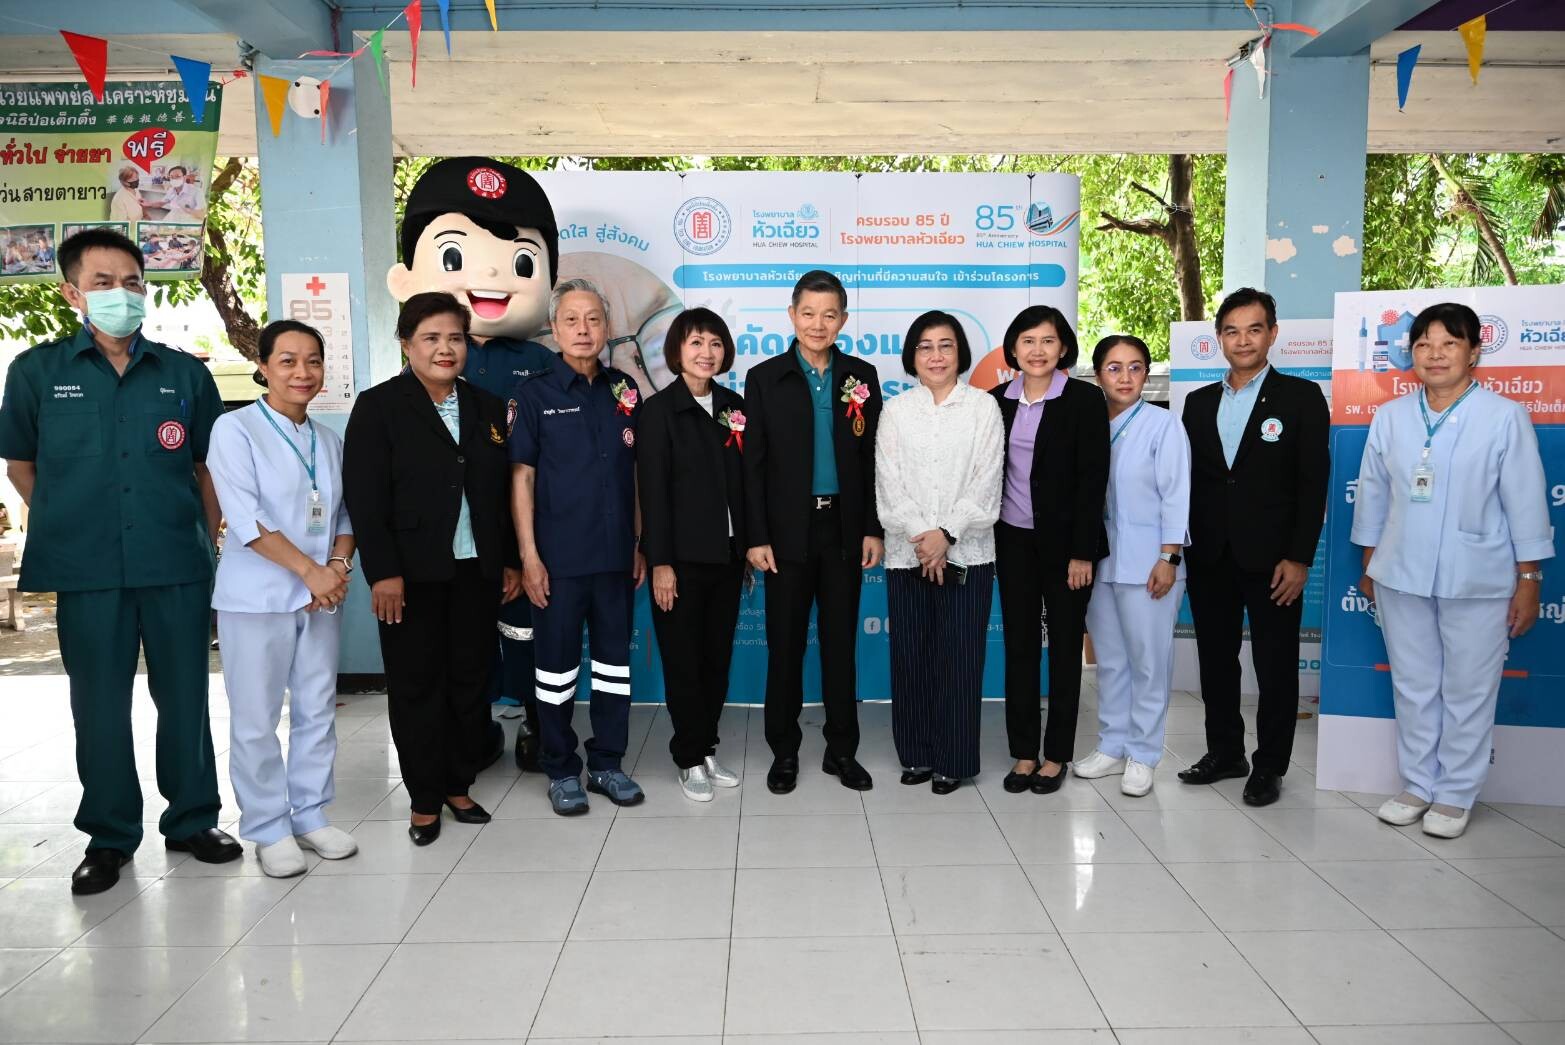 โรงพยาบาลหัวเฉียว ร่วมงาน "คาราวาน ป่อเต็กตึ๊ง ปันความสุข ให้ชุมชน" ครั้งที่ 2